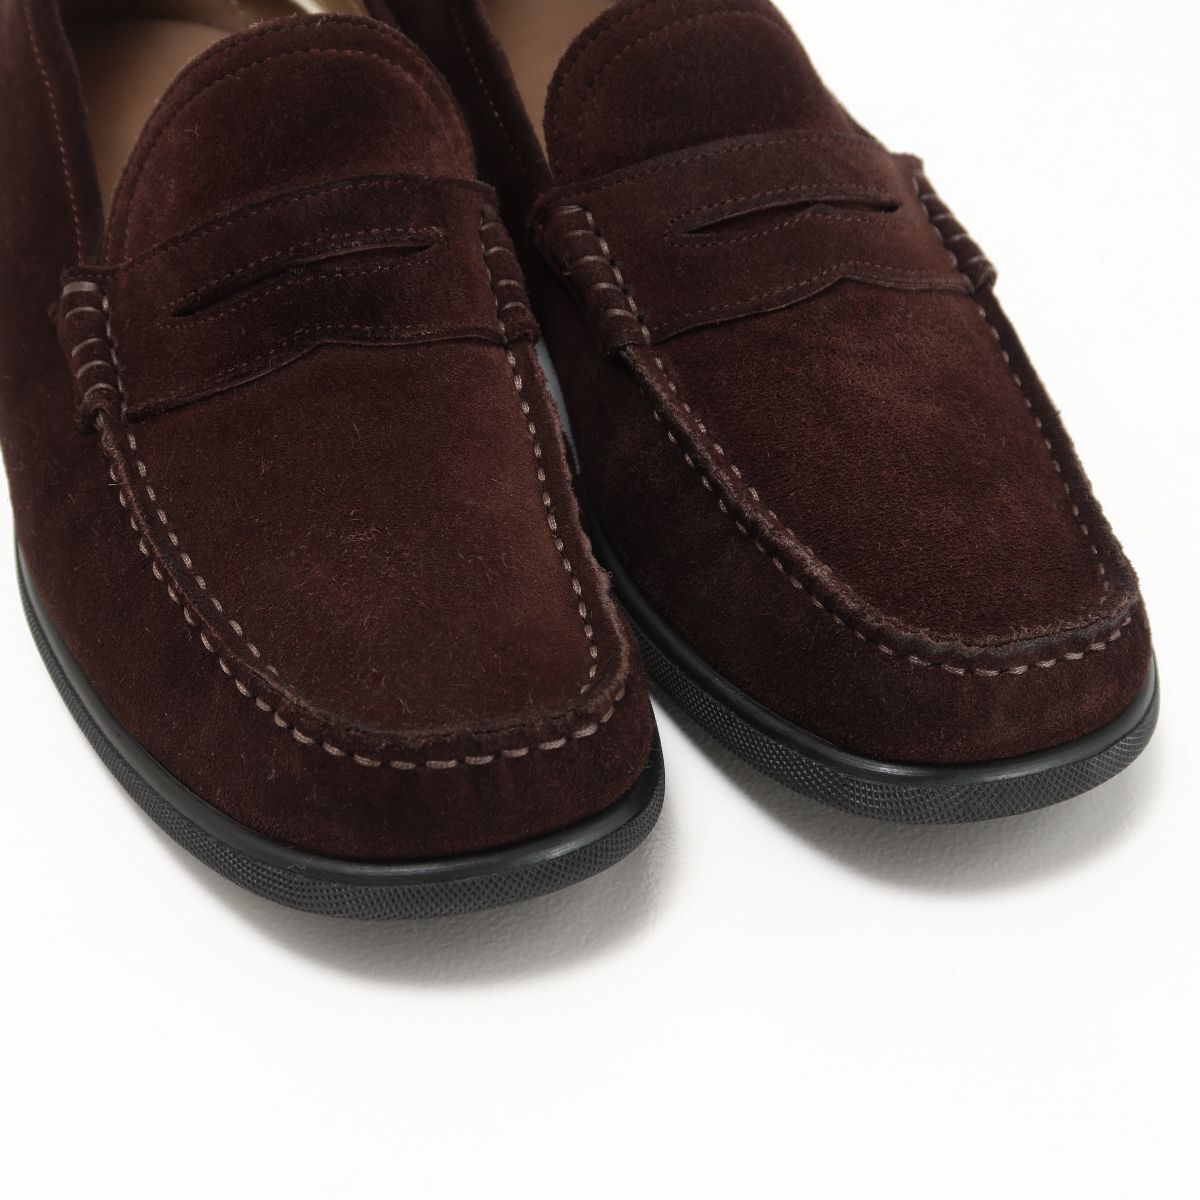 GP9840^ Италия производства Bally /BALLY замша кожа Loafer / туфли без застежки обувь оттенок коричневого размер 3.5/ примерно 23.5cm соответствует 